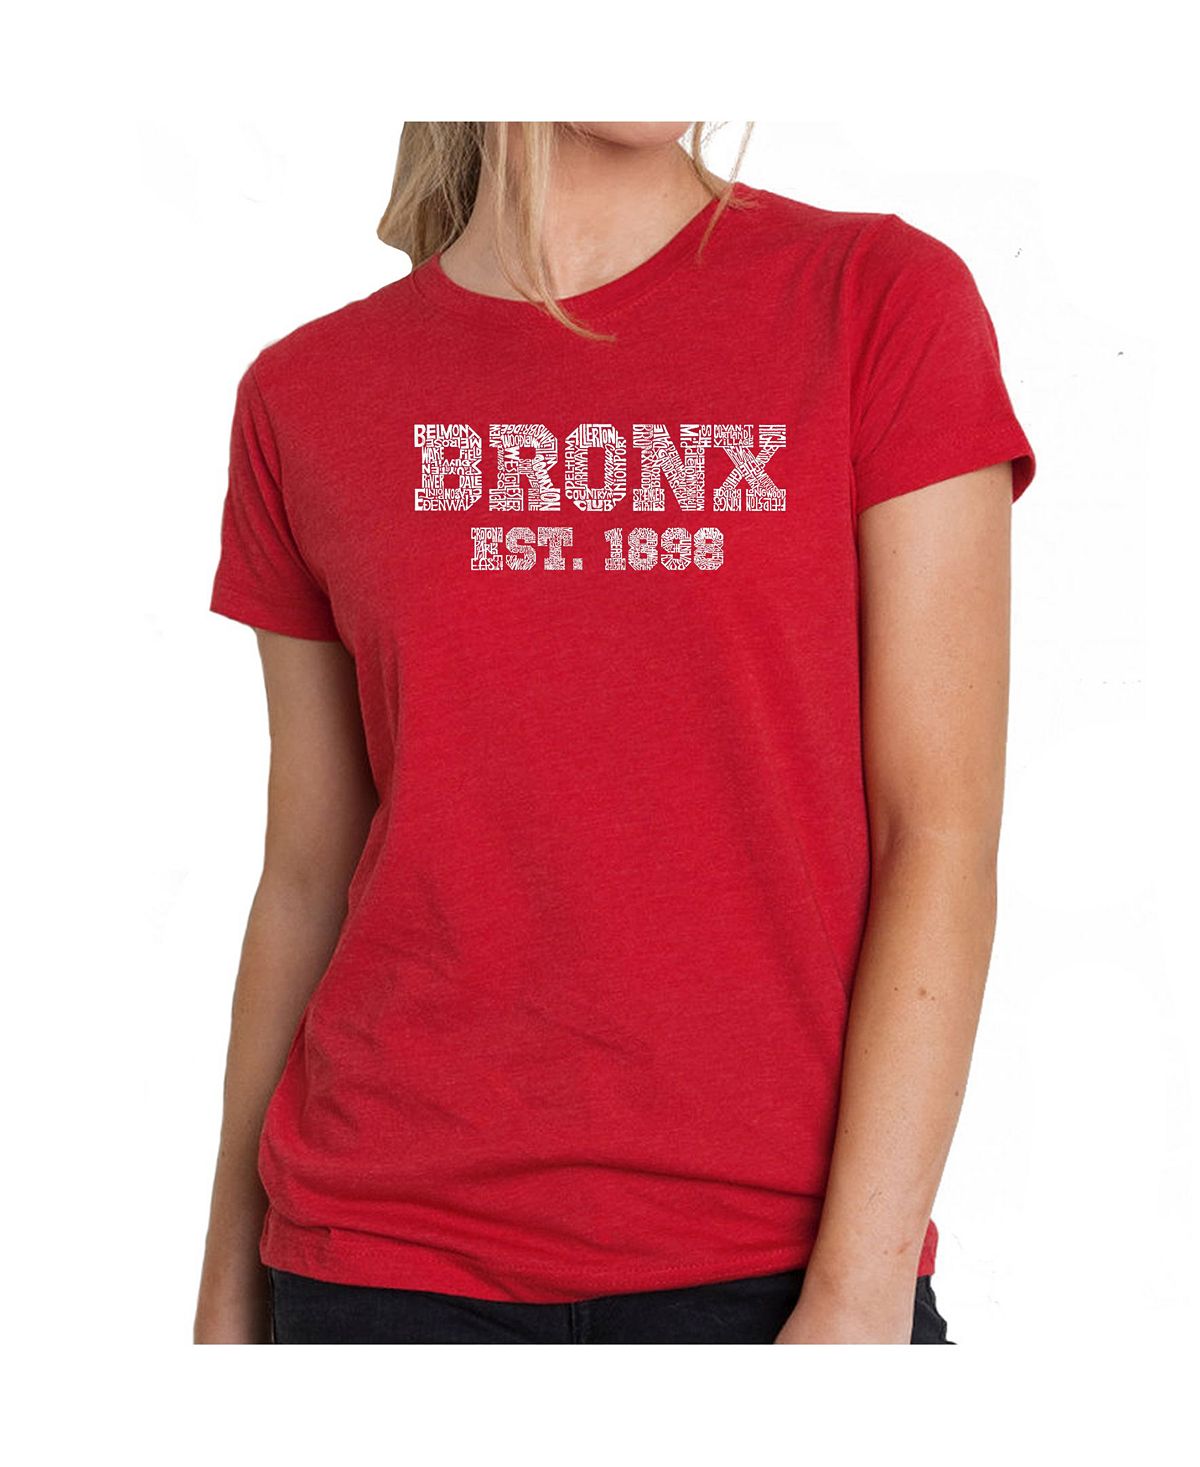 Женская футболка премиум-класса word art - популярные районы бронкса LA Pop Art, красный этим утром в нью йорке